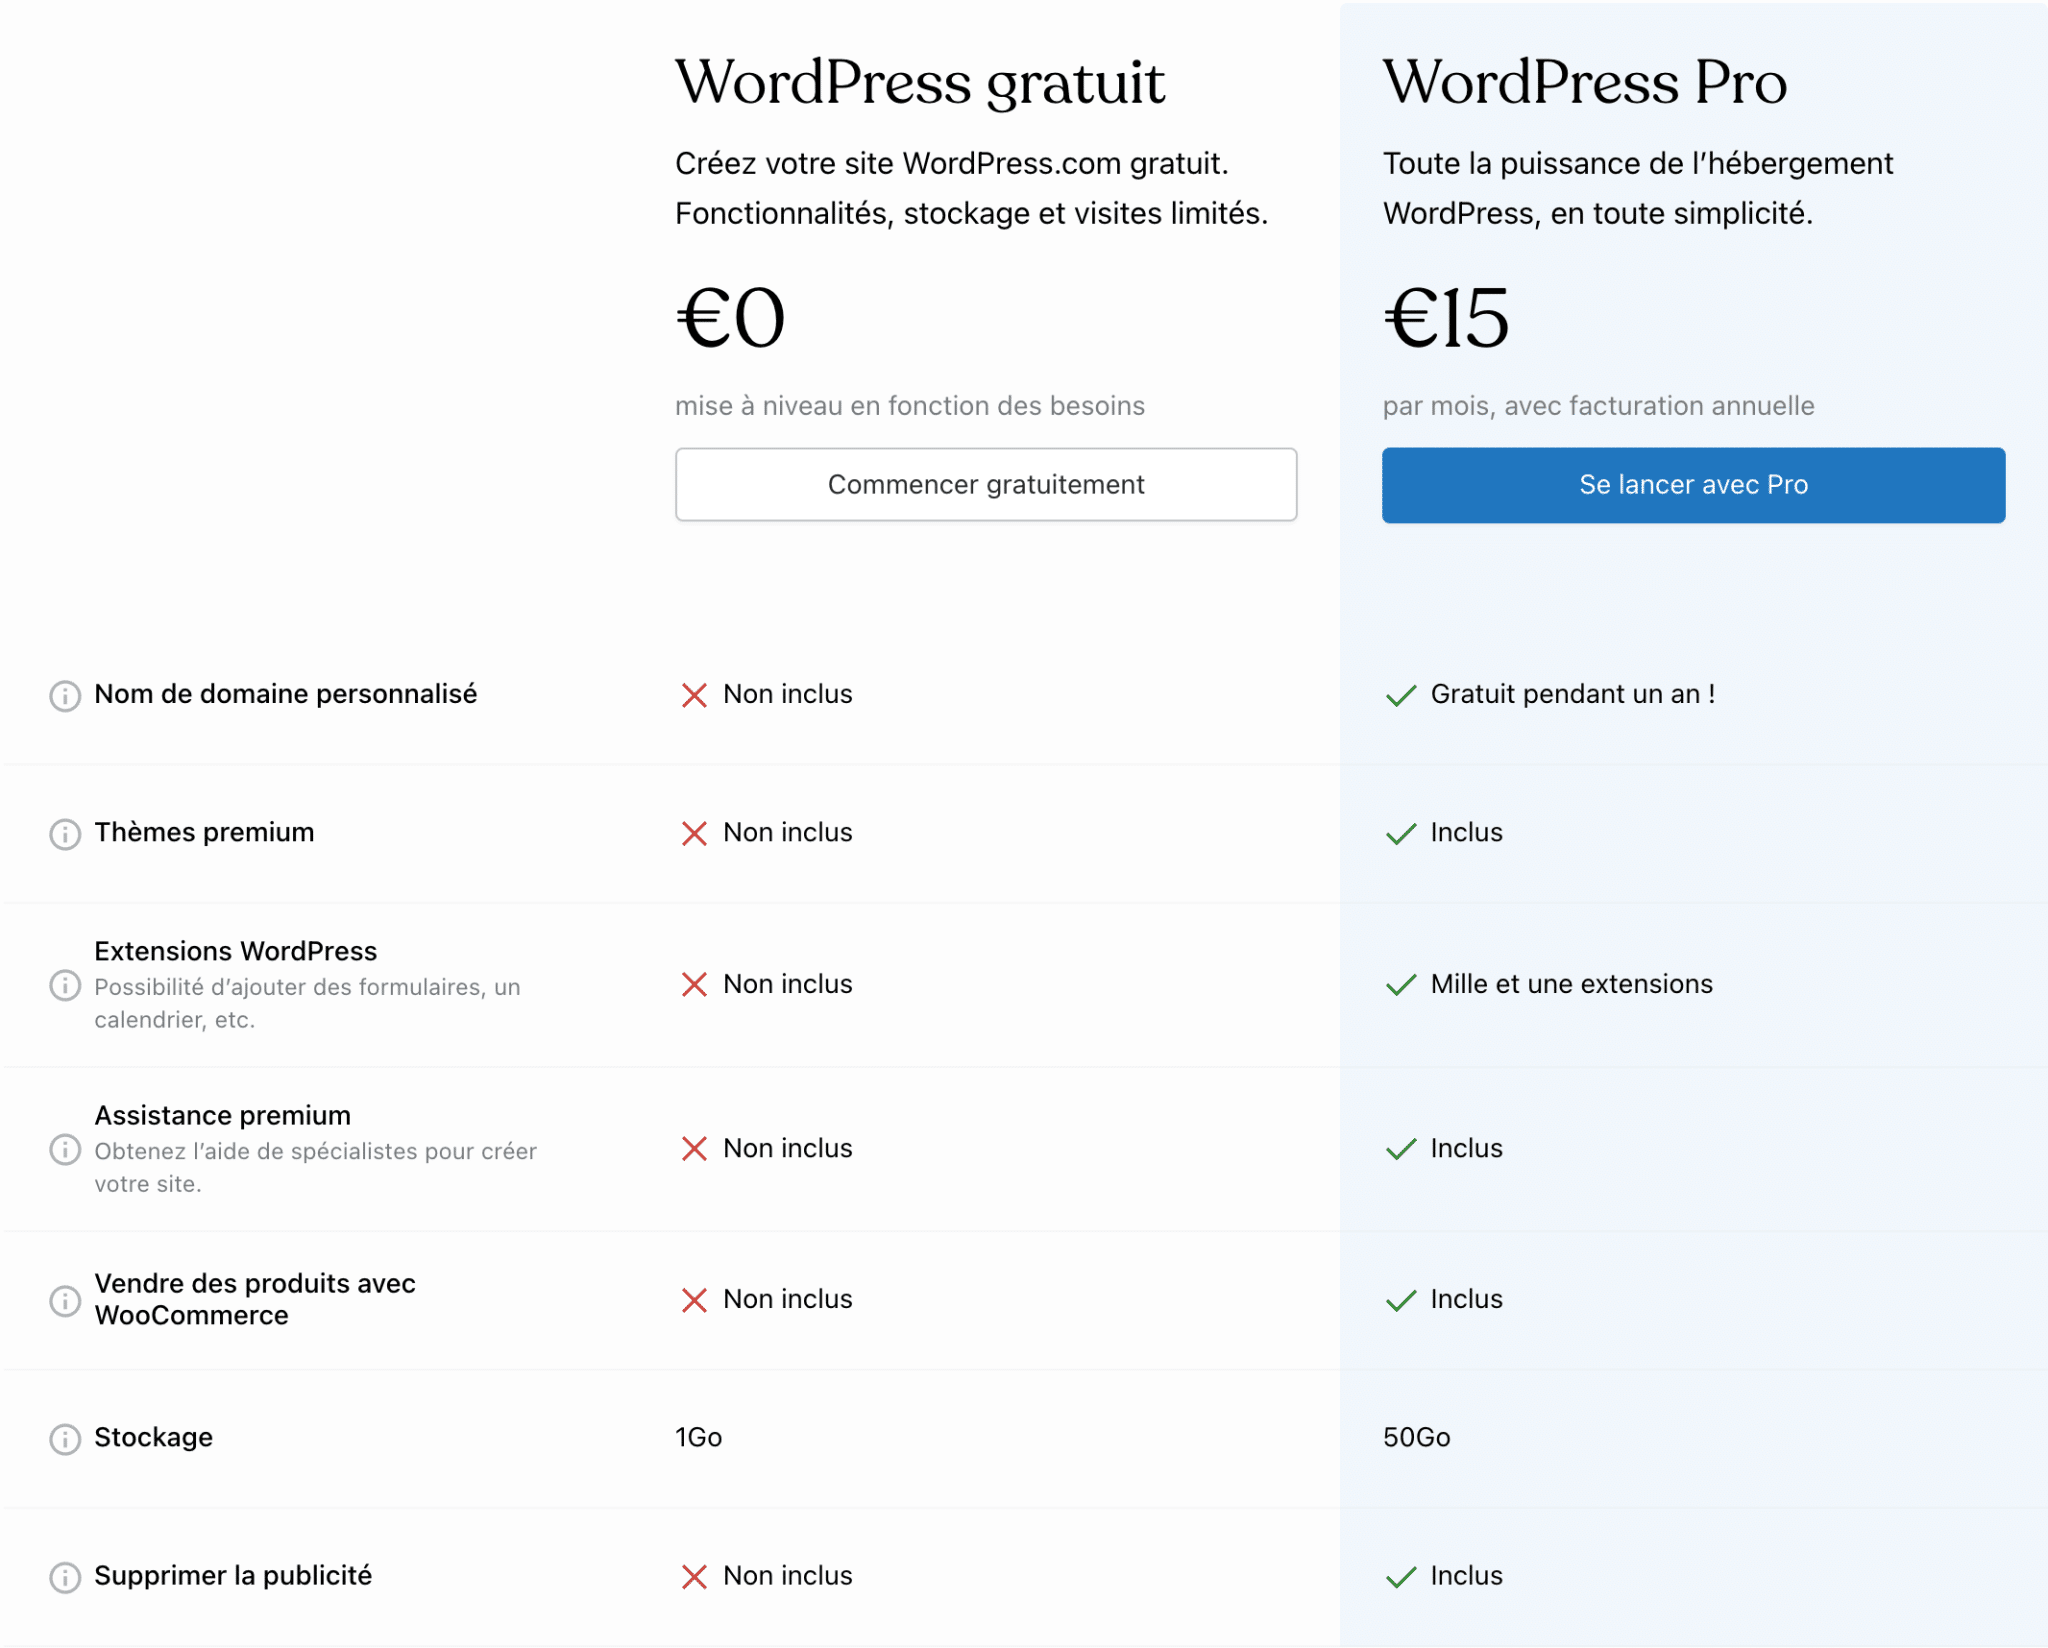 WordPress.com propose une offre gratuite et une offre payante.